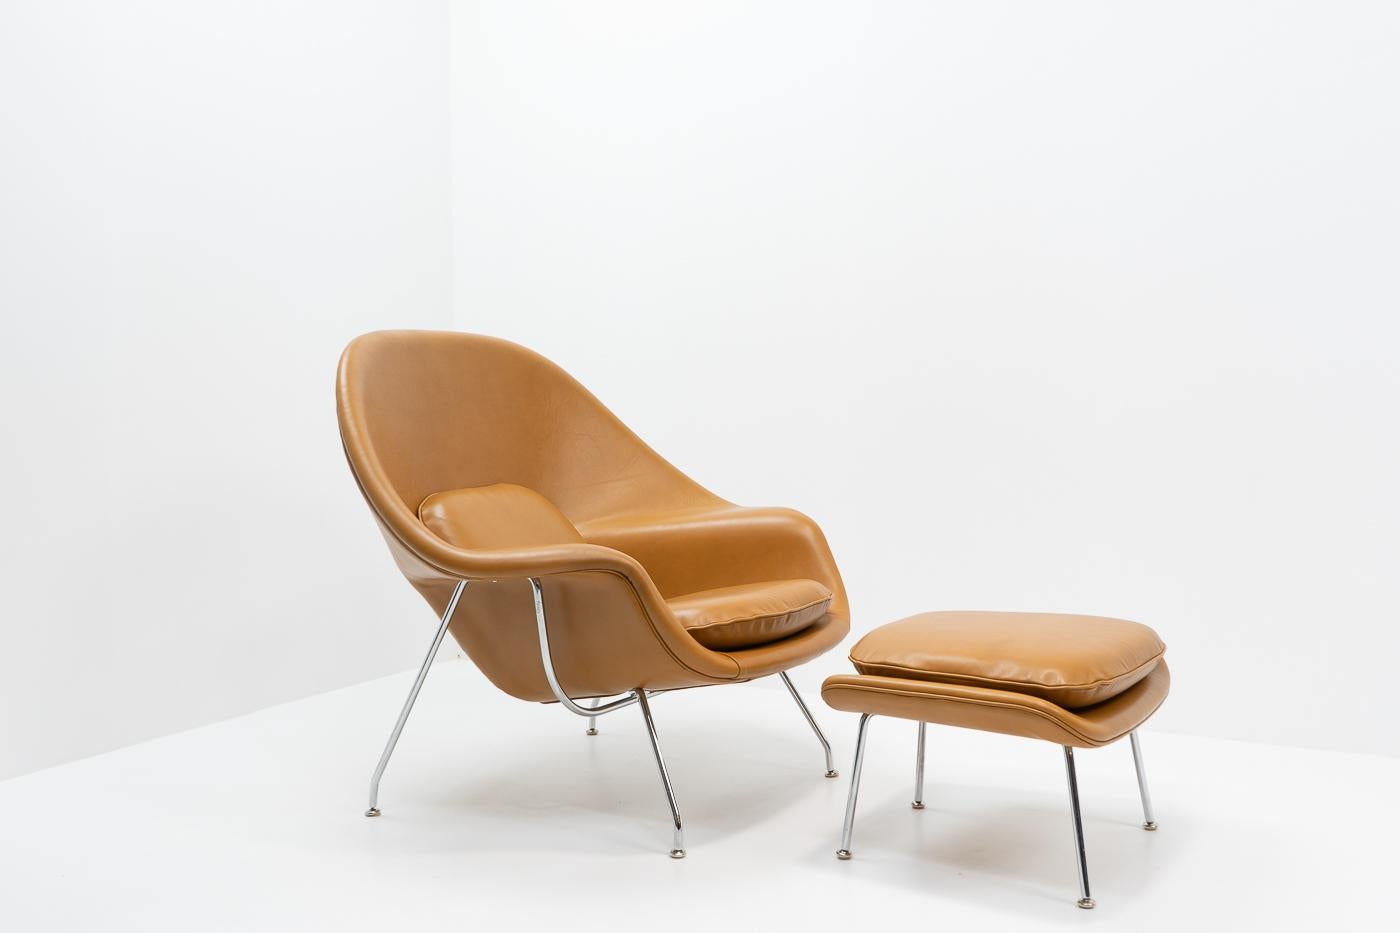 Der von Eero Saarinen entworfene und von Knoll produzierte Womb Chair ist ein bequemer Stuhl. Dieser ikonische Stuhl ist ein Beispiel für Saarinens visionäres Design und Knolls Engagement für außergewöhnliche Handwerkskunst.

Wir haben eine